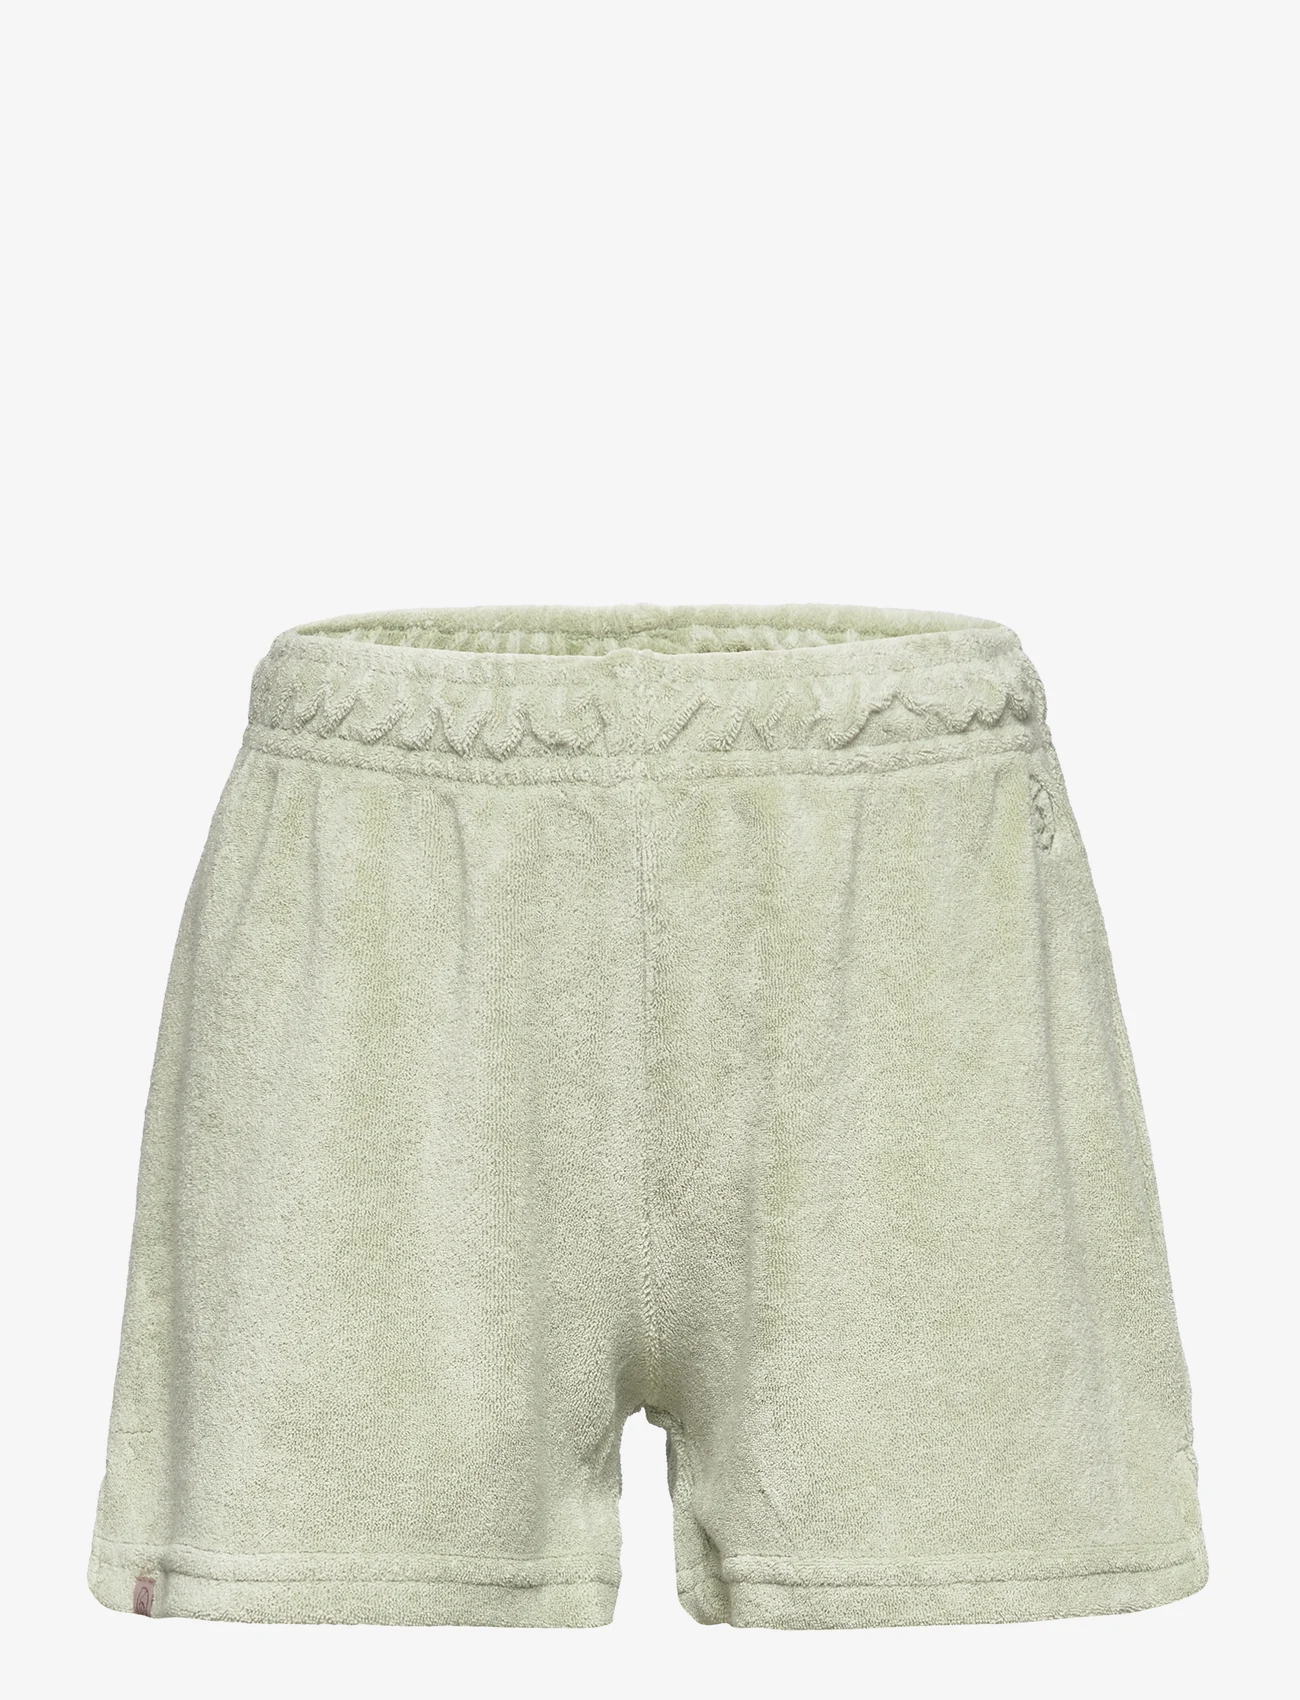 Rosemunde Kids - Shorts - sweat shorts - desert sage - 0